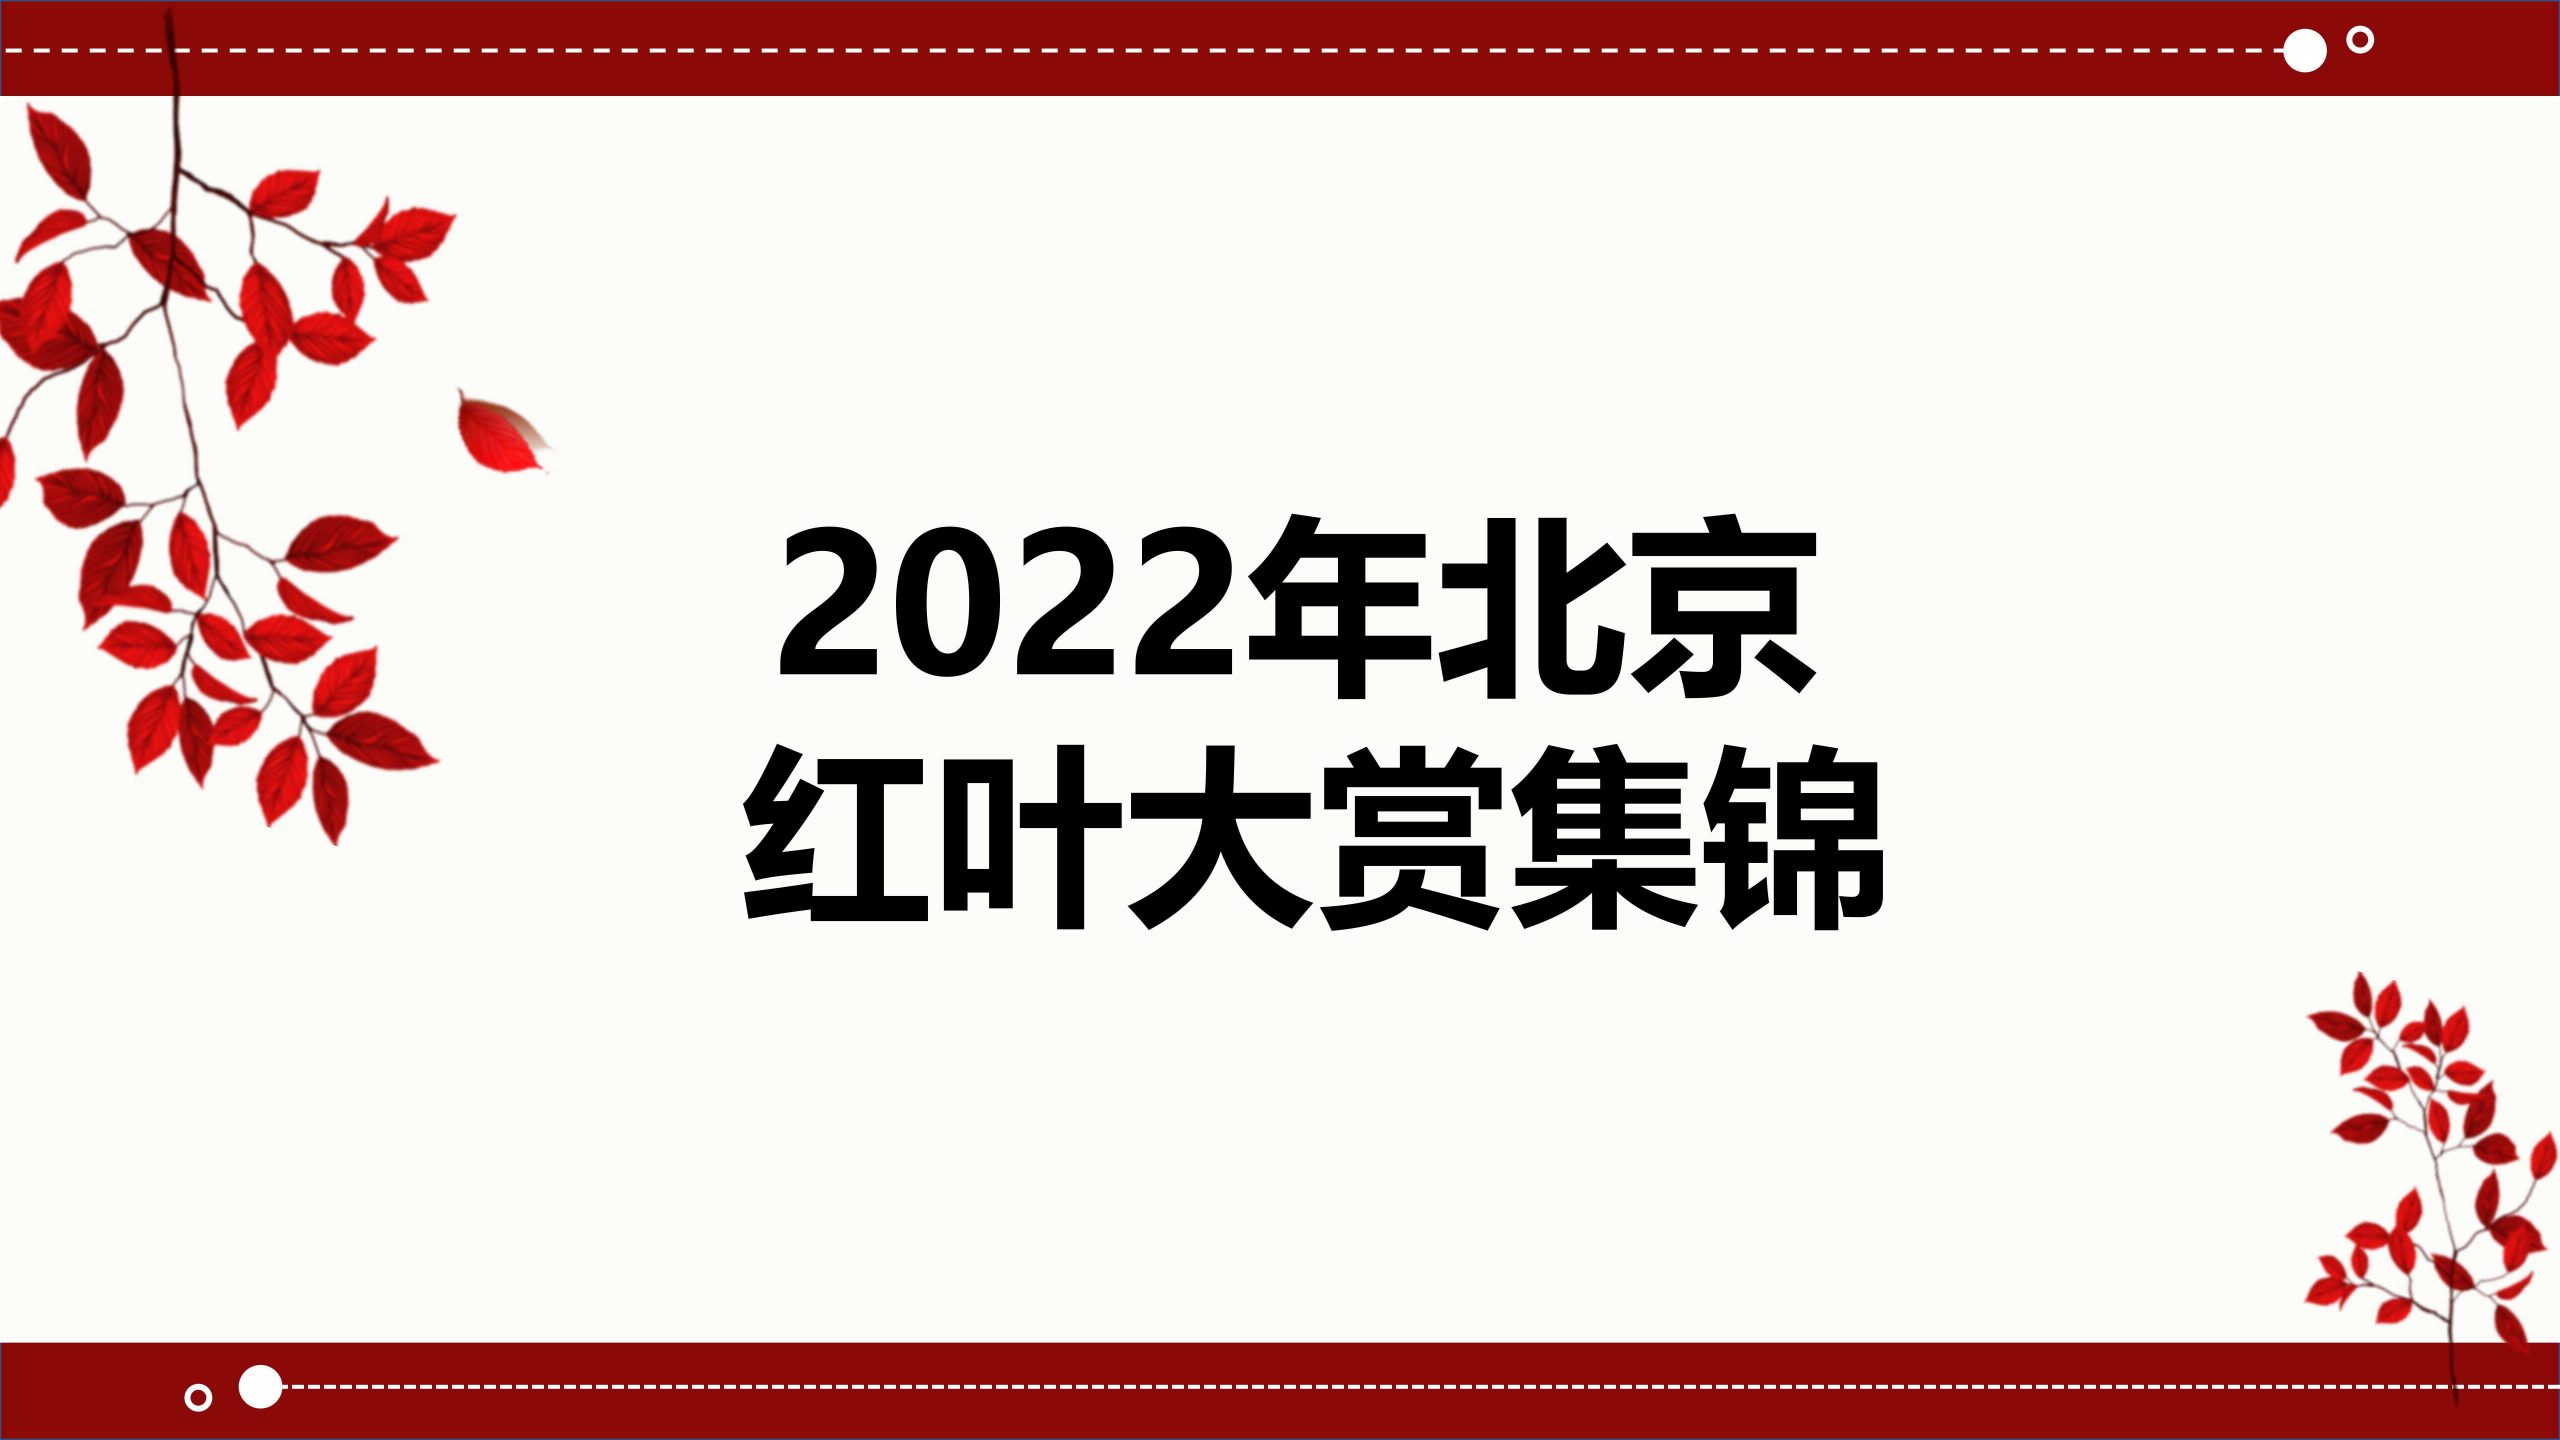 2022年北京红叶大赏集锦，推荐10个最美红叶赏秋地，一眼心动！缩略图